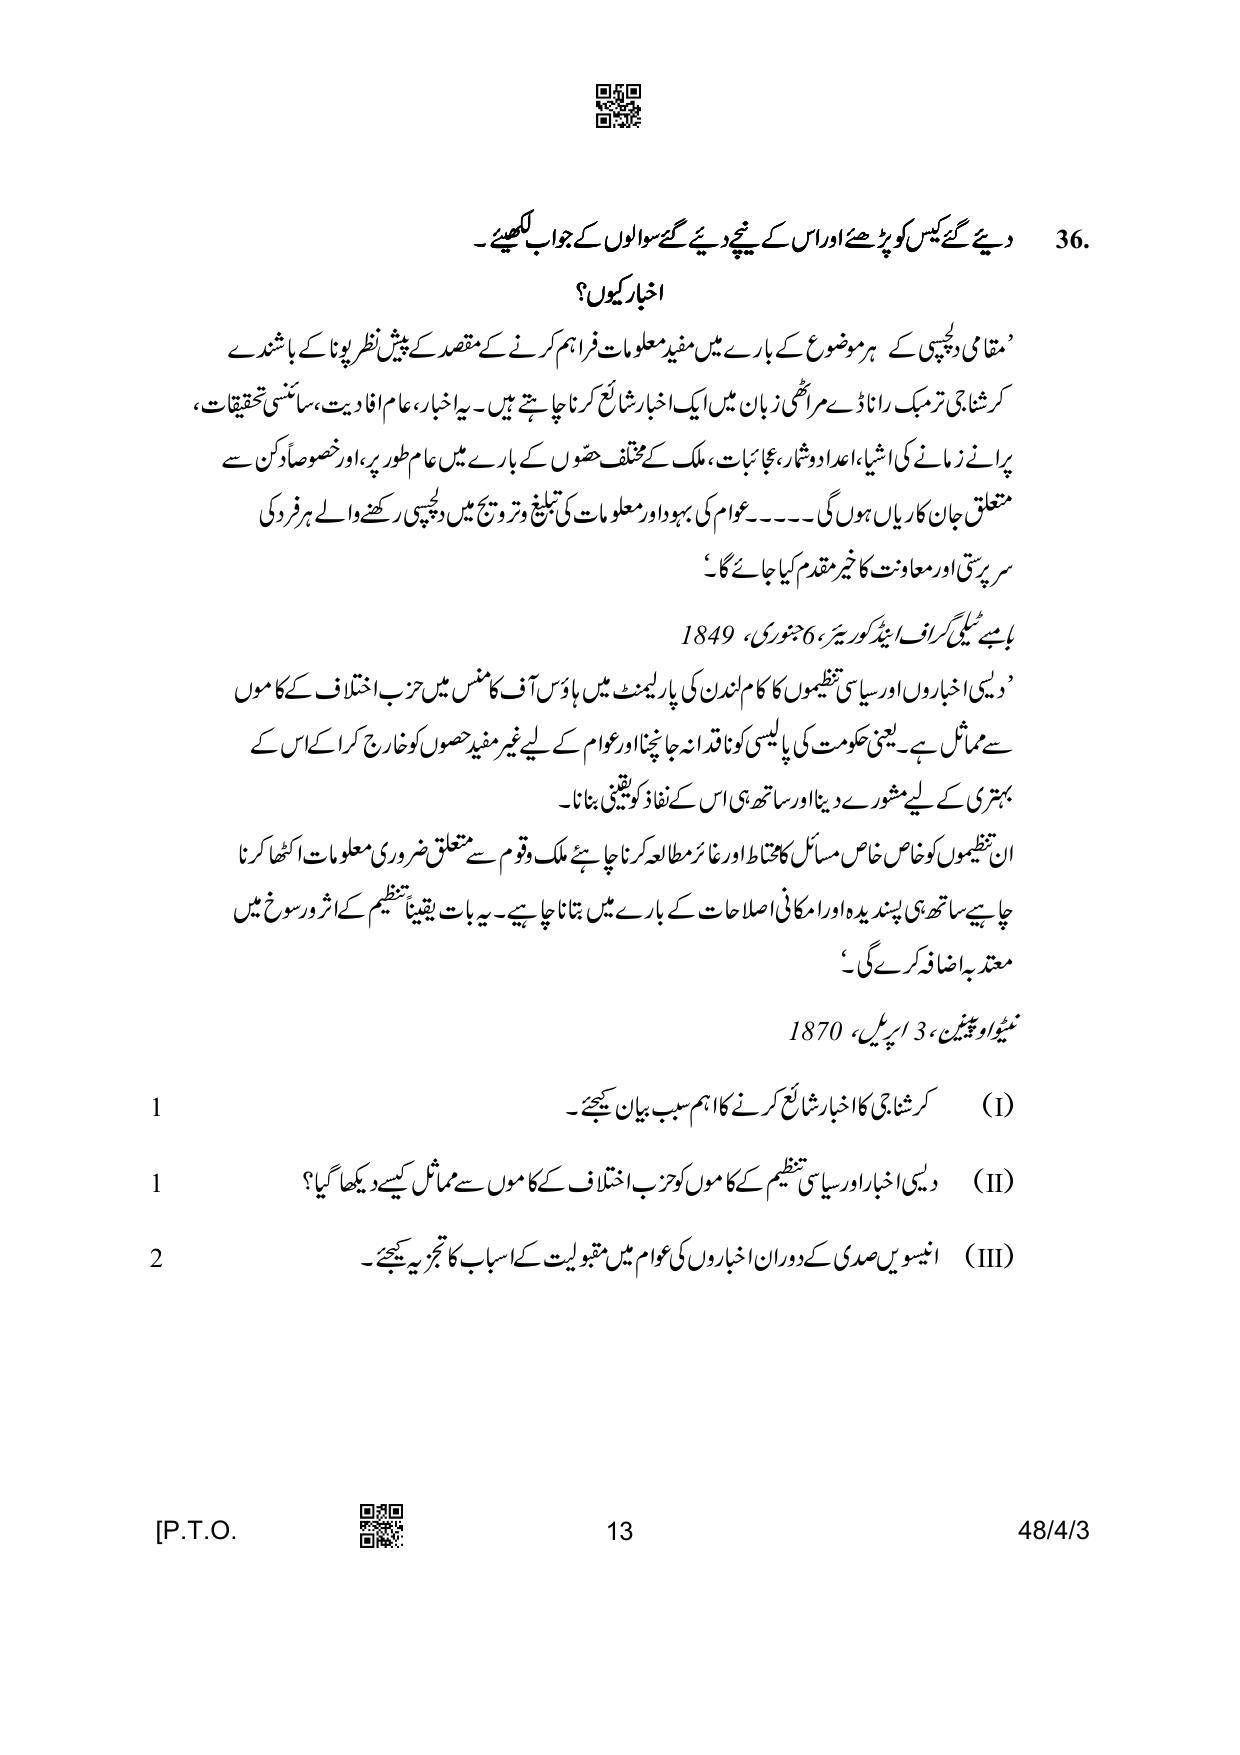 CBSE Class 10 48-4-3 Social Science Urdu Version 2023 Question Paper - Page 13